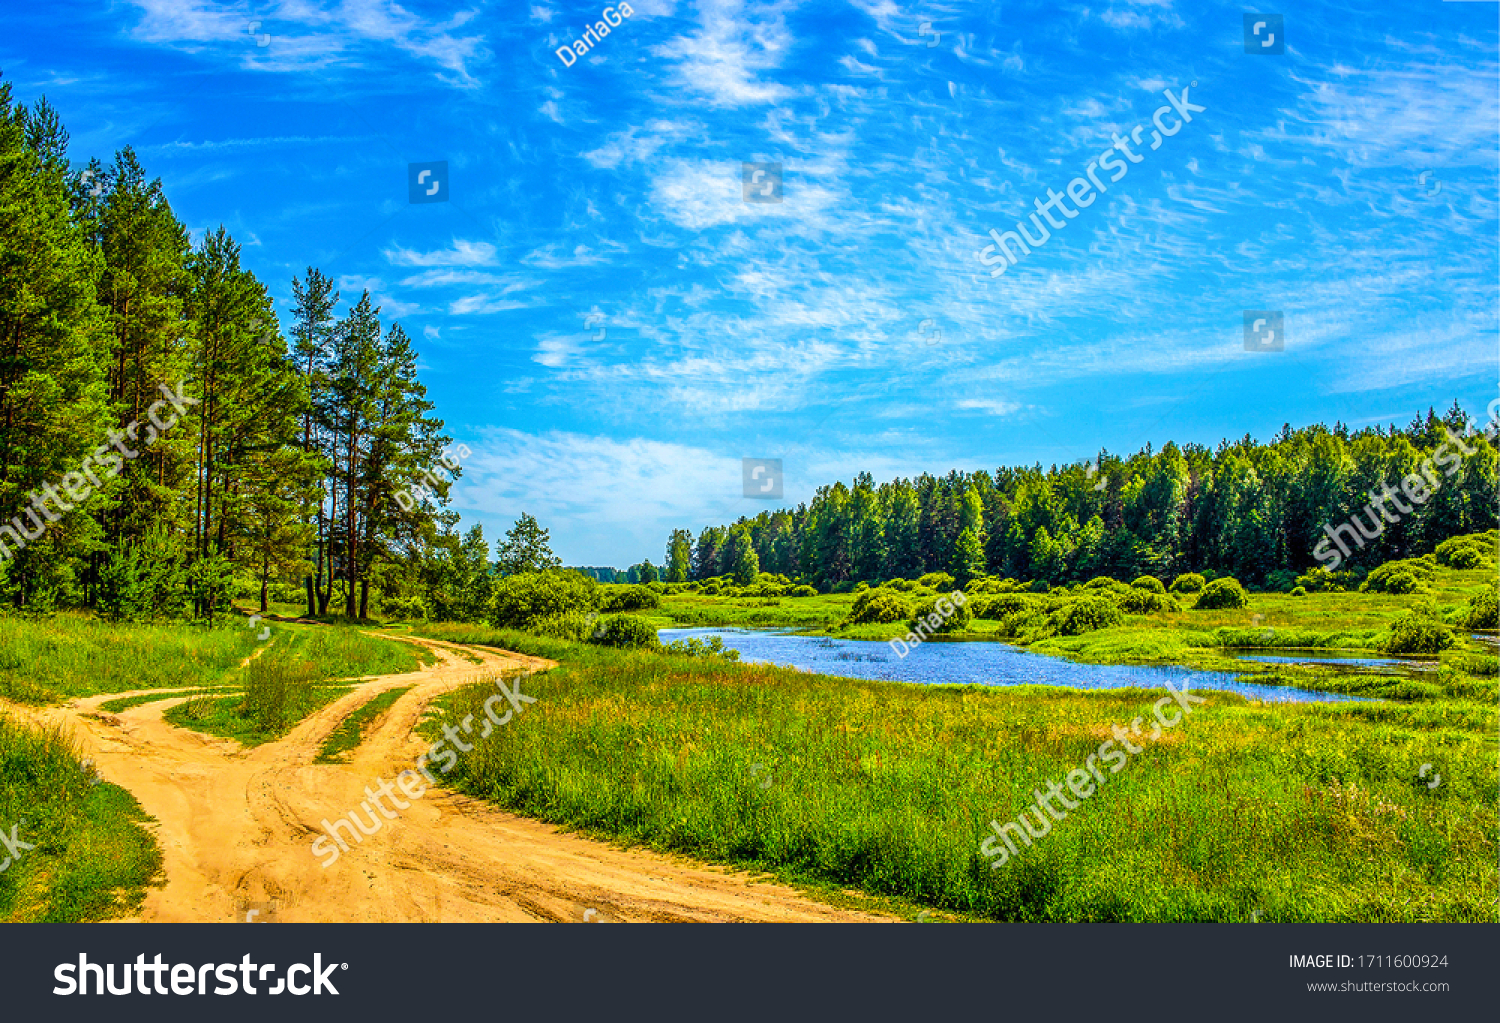 Summer lake on green natur landscape #1711600924